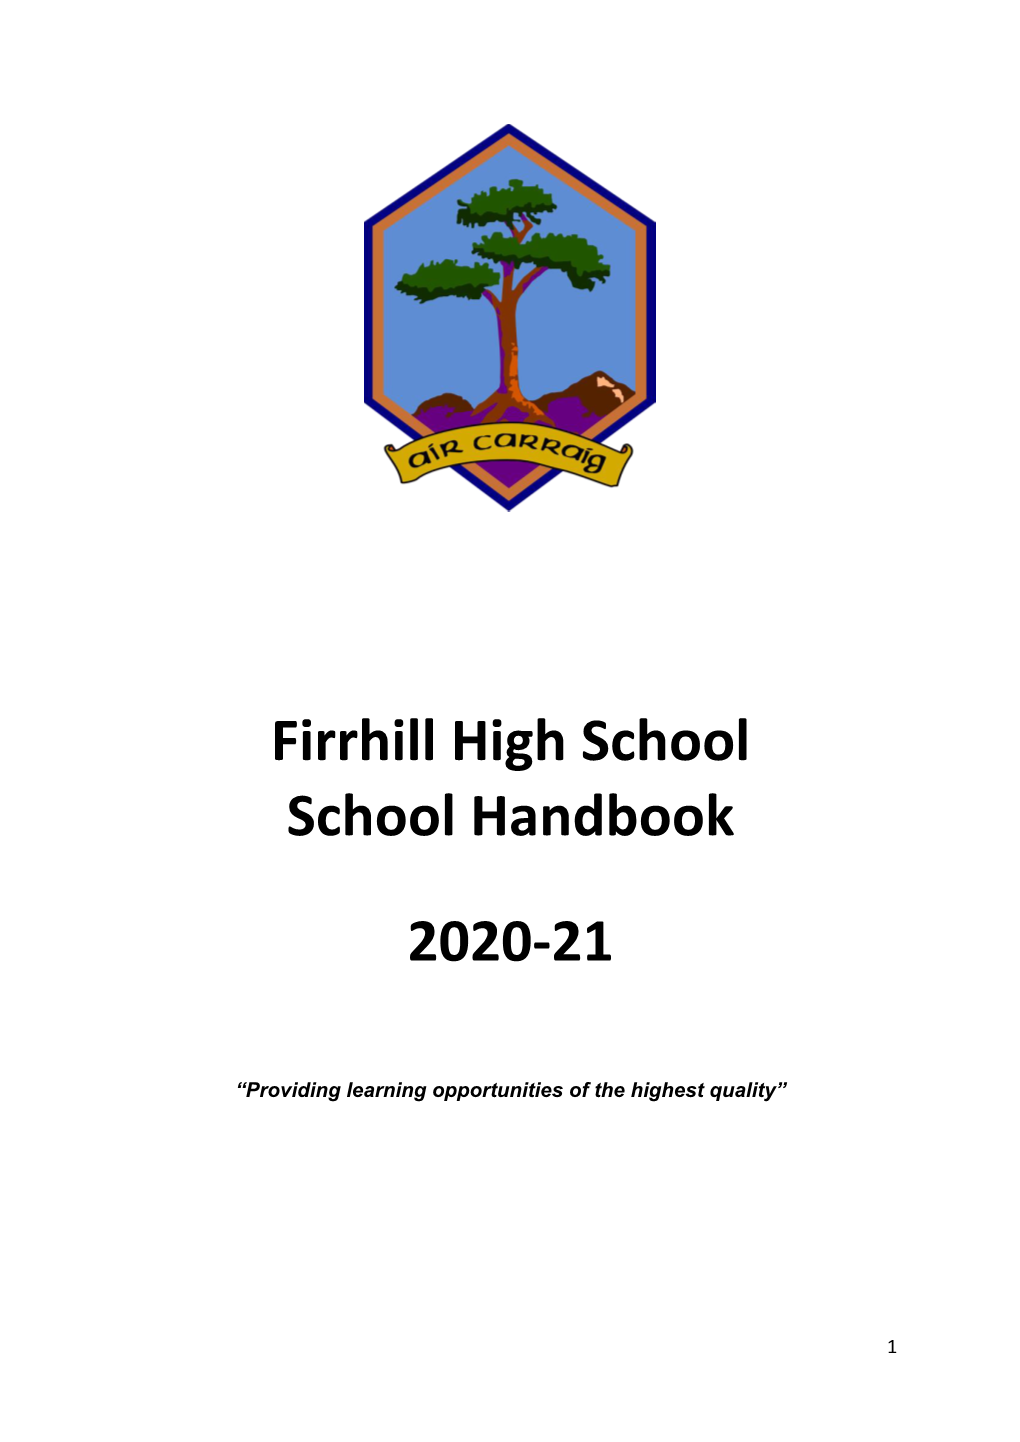 Firrhill High School School Handbook 2020-21